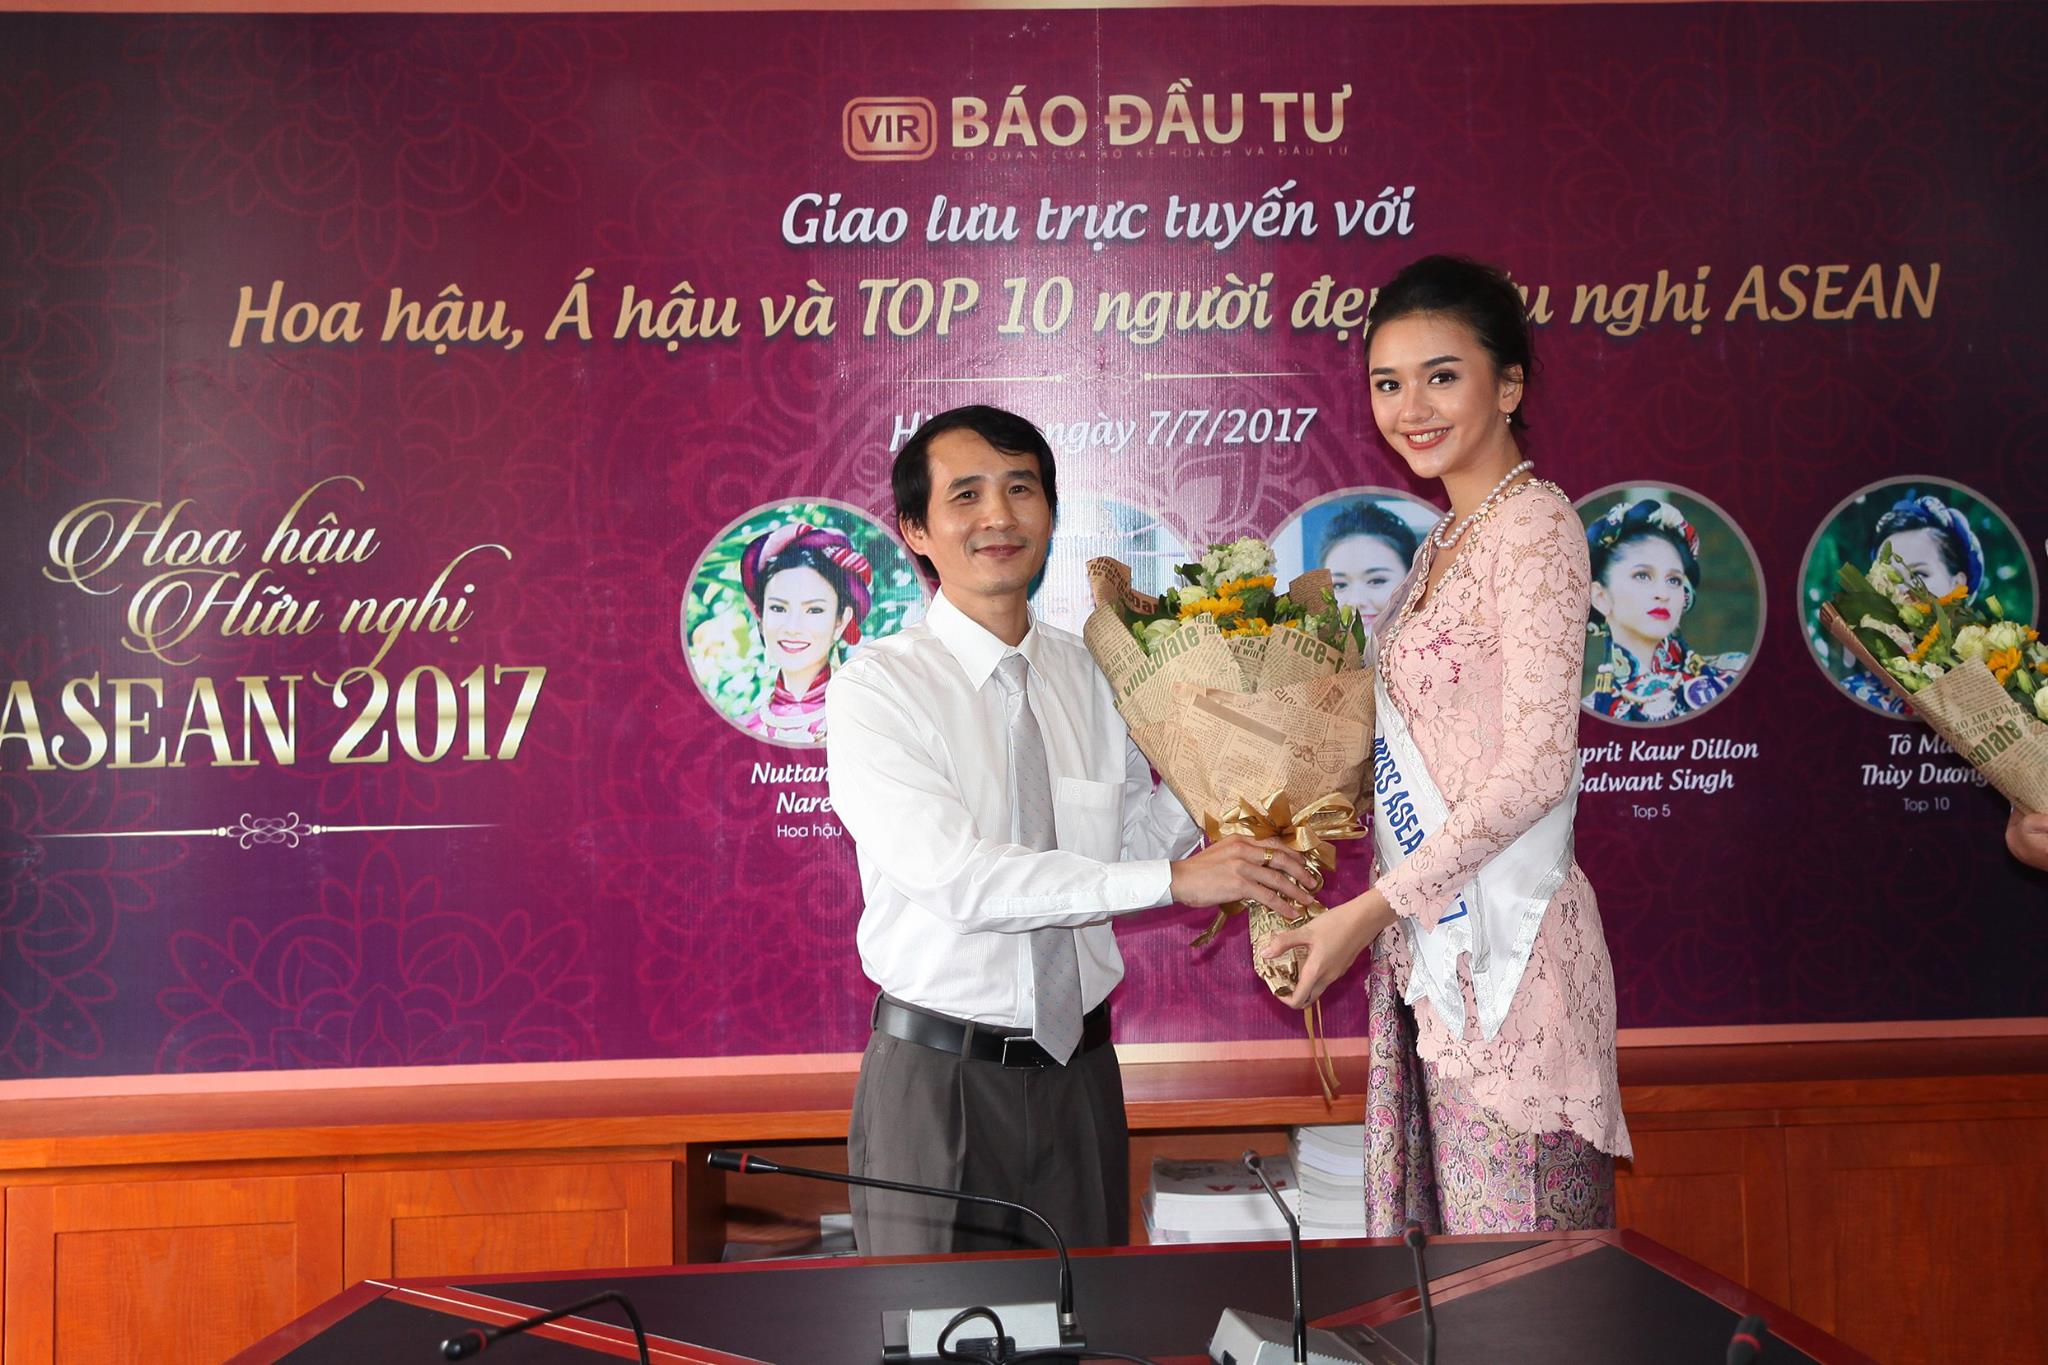 Ông Bùi Đức Hải tặng hoa cho Á hậu 2 Benedicta Heda Mercy Charis đến từ Indonesia. Cô cao 1m71, nặng 51kg, số đo ba vòng 81-63-91